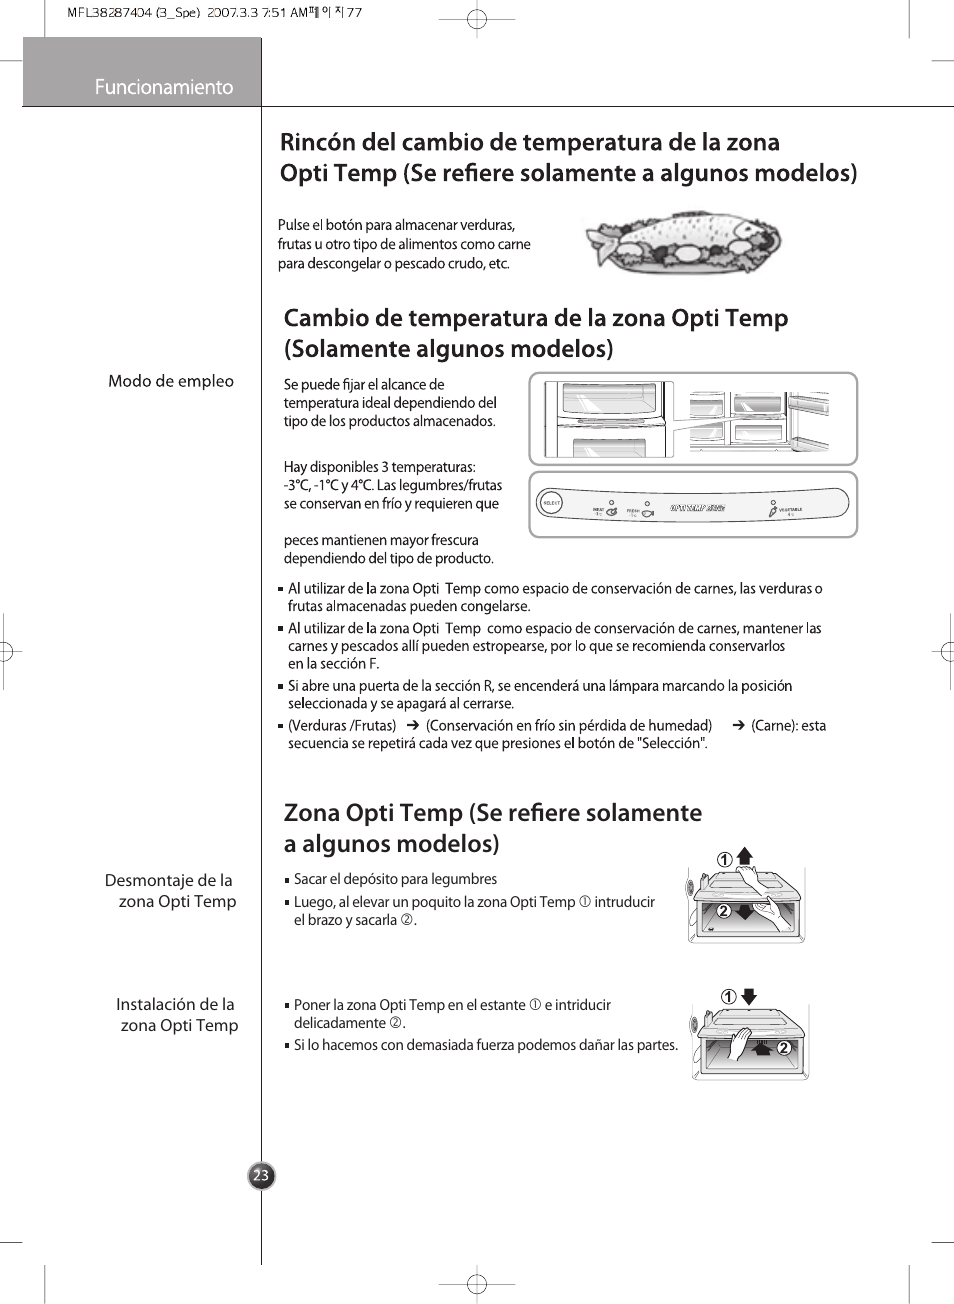 Zona opti temp (se refiere solamente, A algunos modelos), Funcionamiento | LG GRB2376EXR Manual del usuario | Página 23 / 36